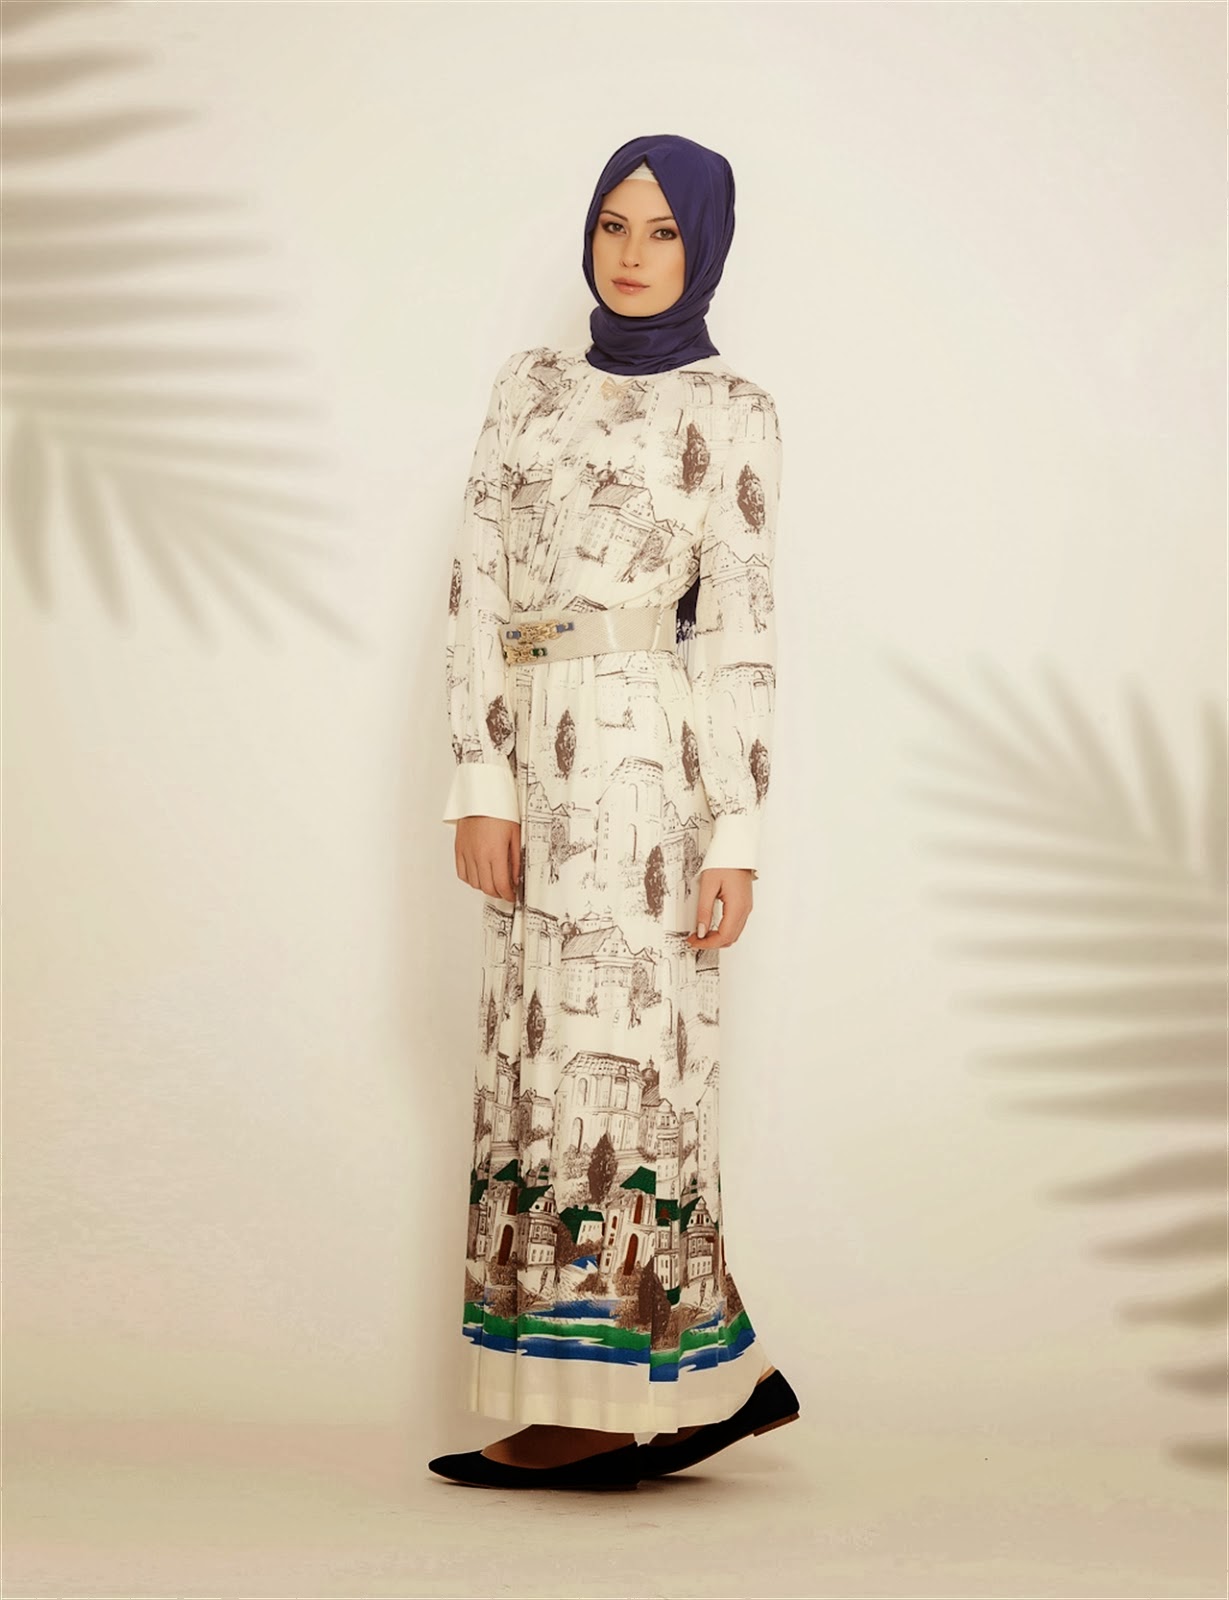 Www-Fatakat A-Com2016 ملابس محجبات تركية ماركة كايرا شتاءKayra Hijab Chic 2016Hijab Fashion-Jpeg ملابس محجبات مميزة 2023 ازياء للبنات المحجبات 2023 احمد عامر